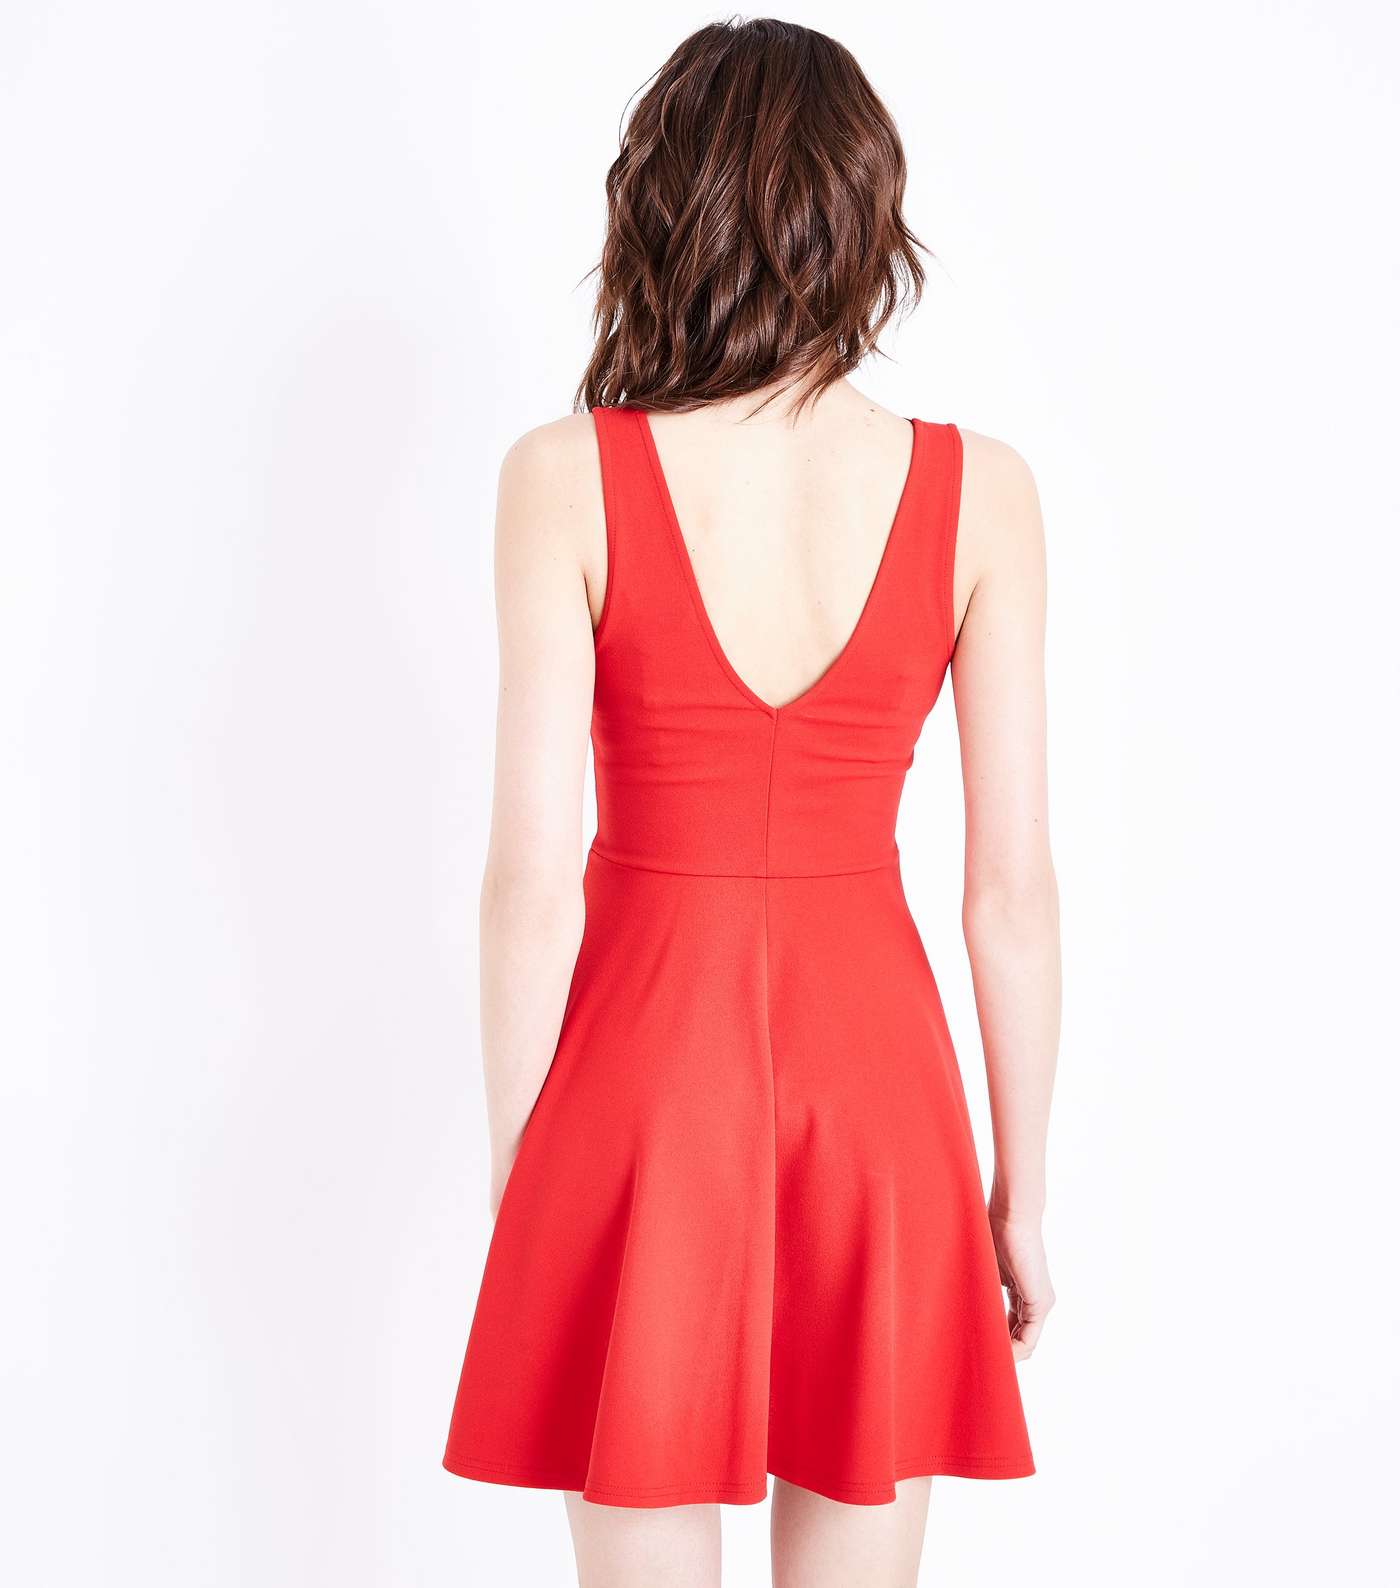 Red Scallop V Neck Sleeveless Skater Dress Image 3